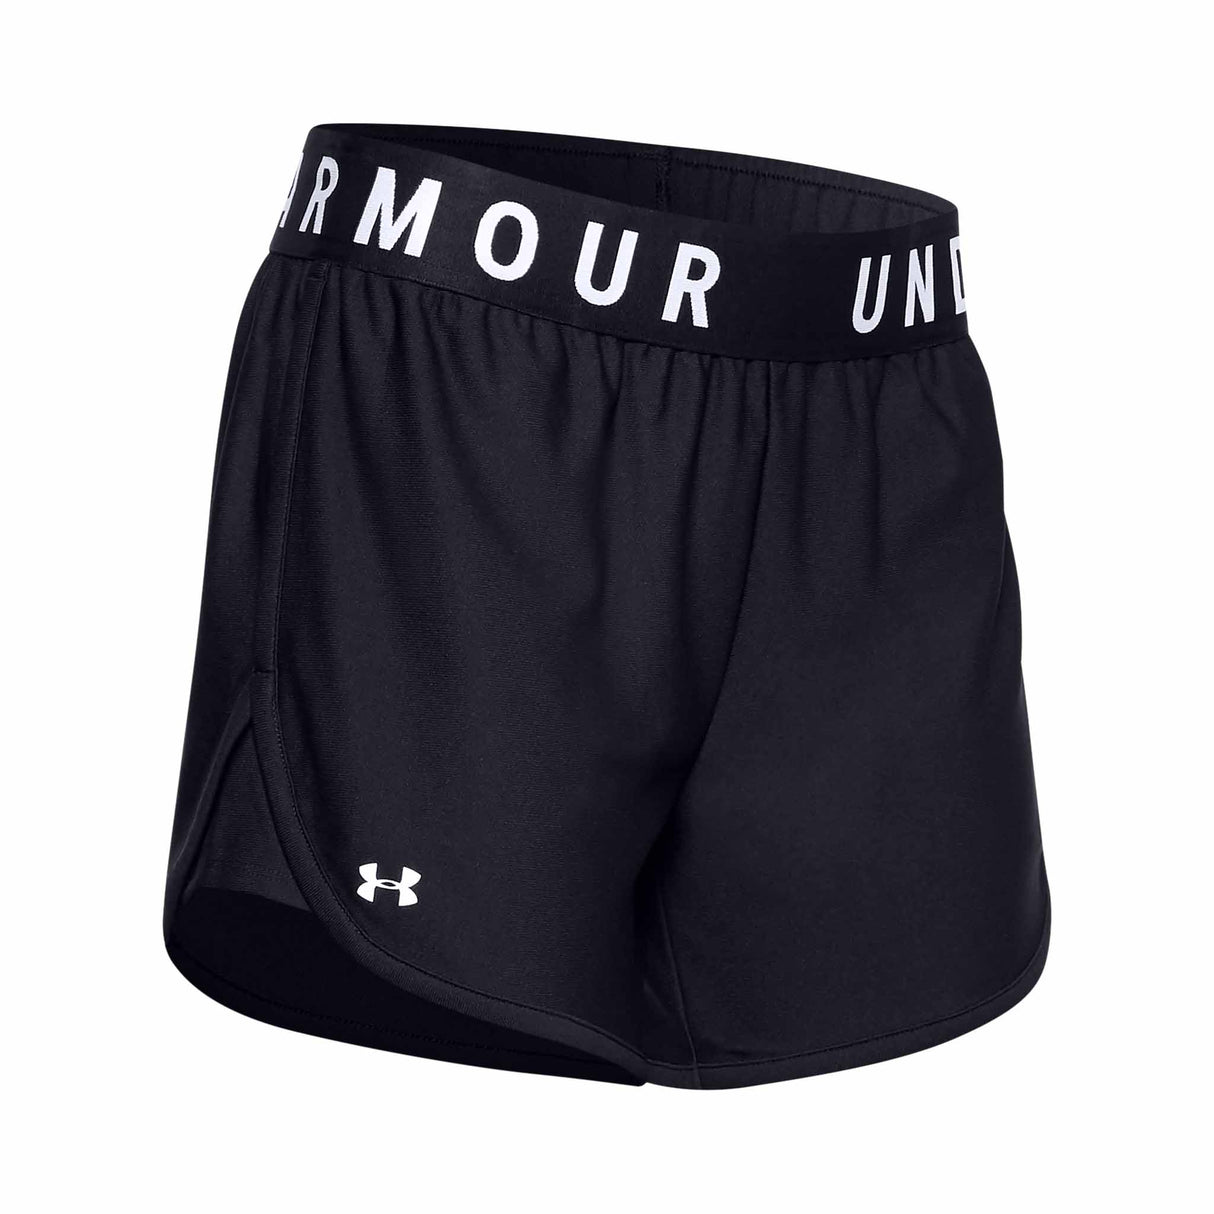 UA Play Up shorts sport 5 pouces femme - noir/blanc